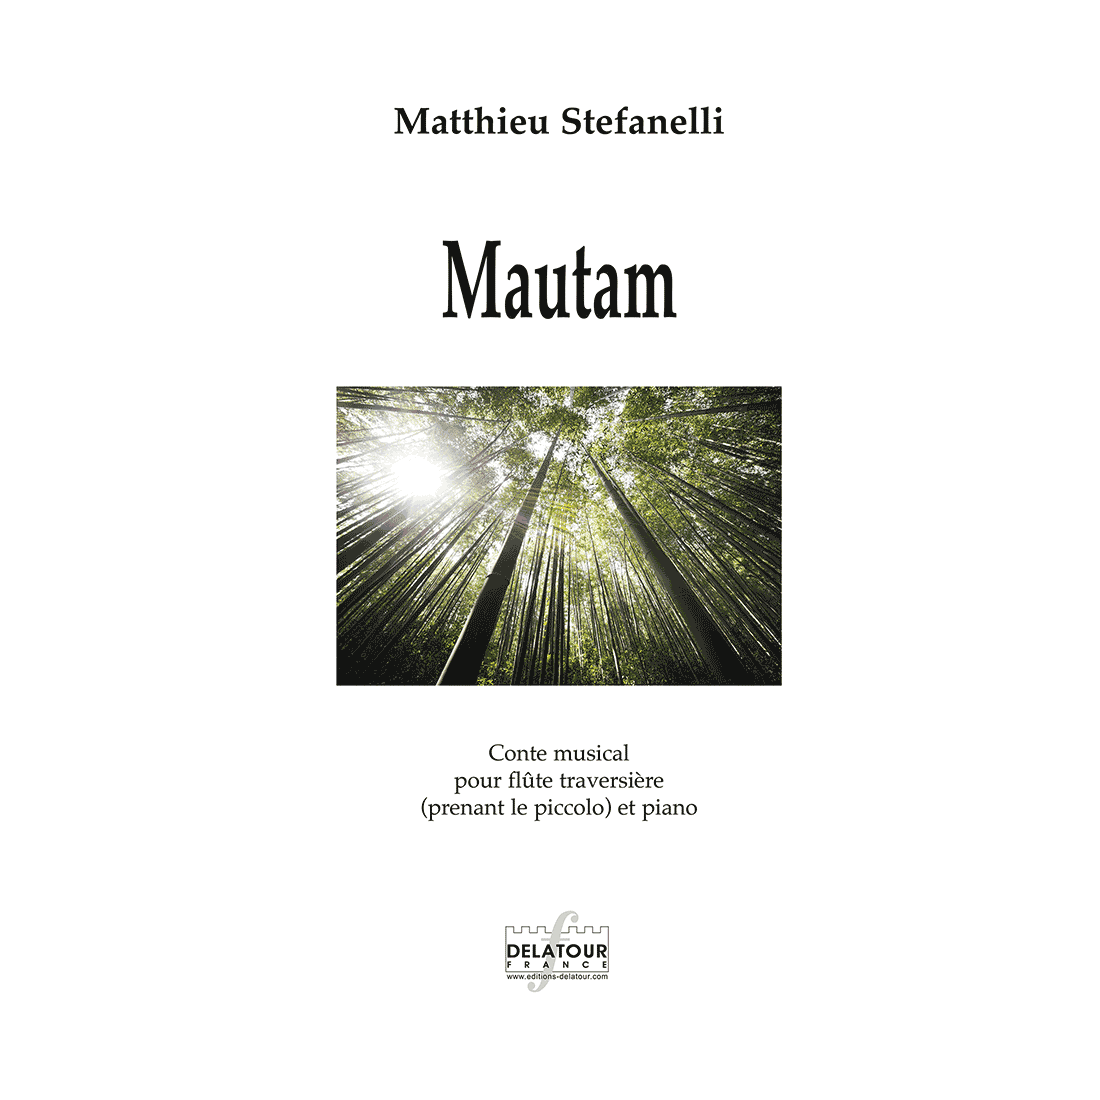 Mautam - Conte musical for flute and piano